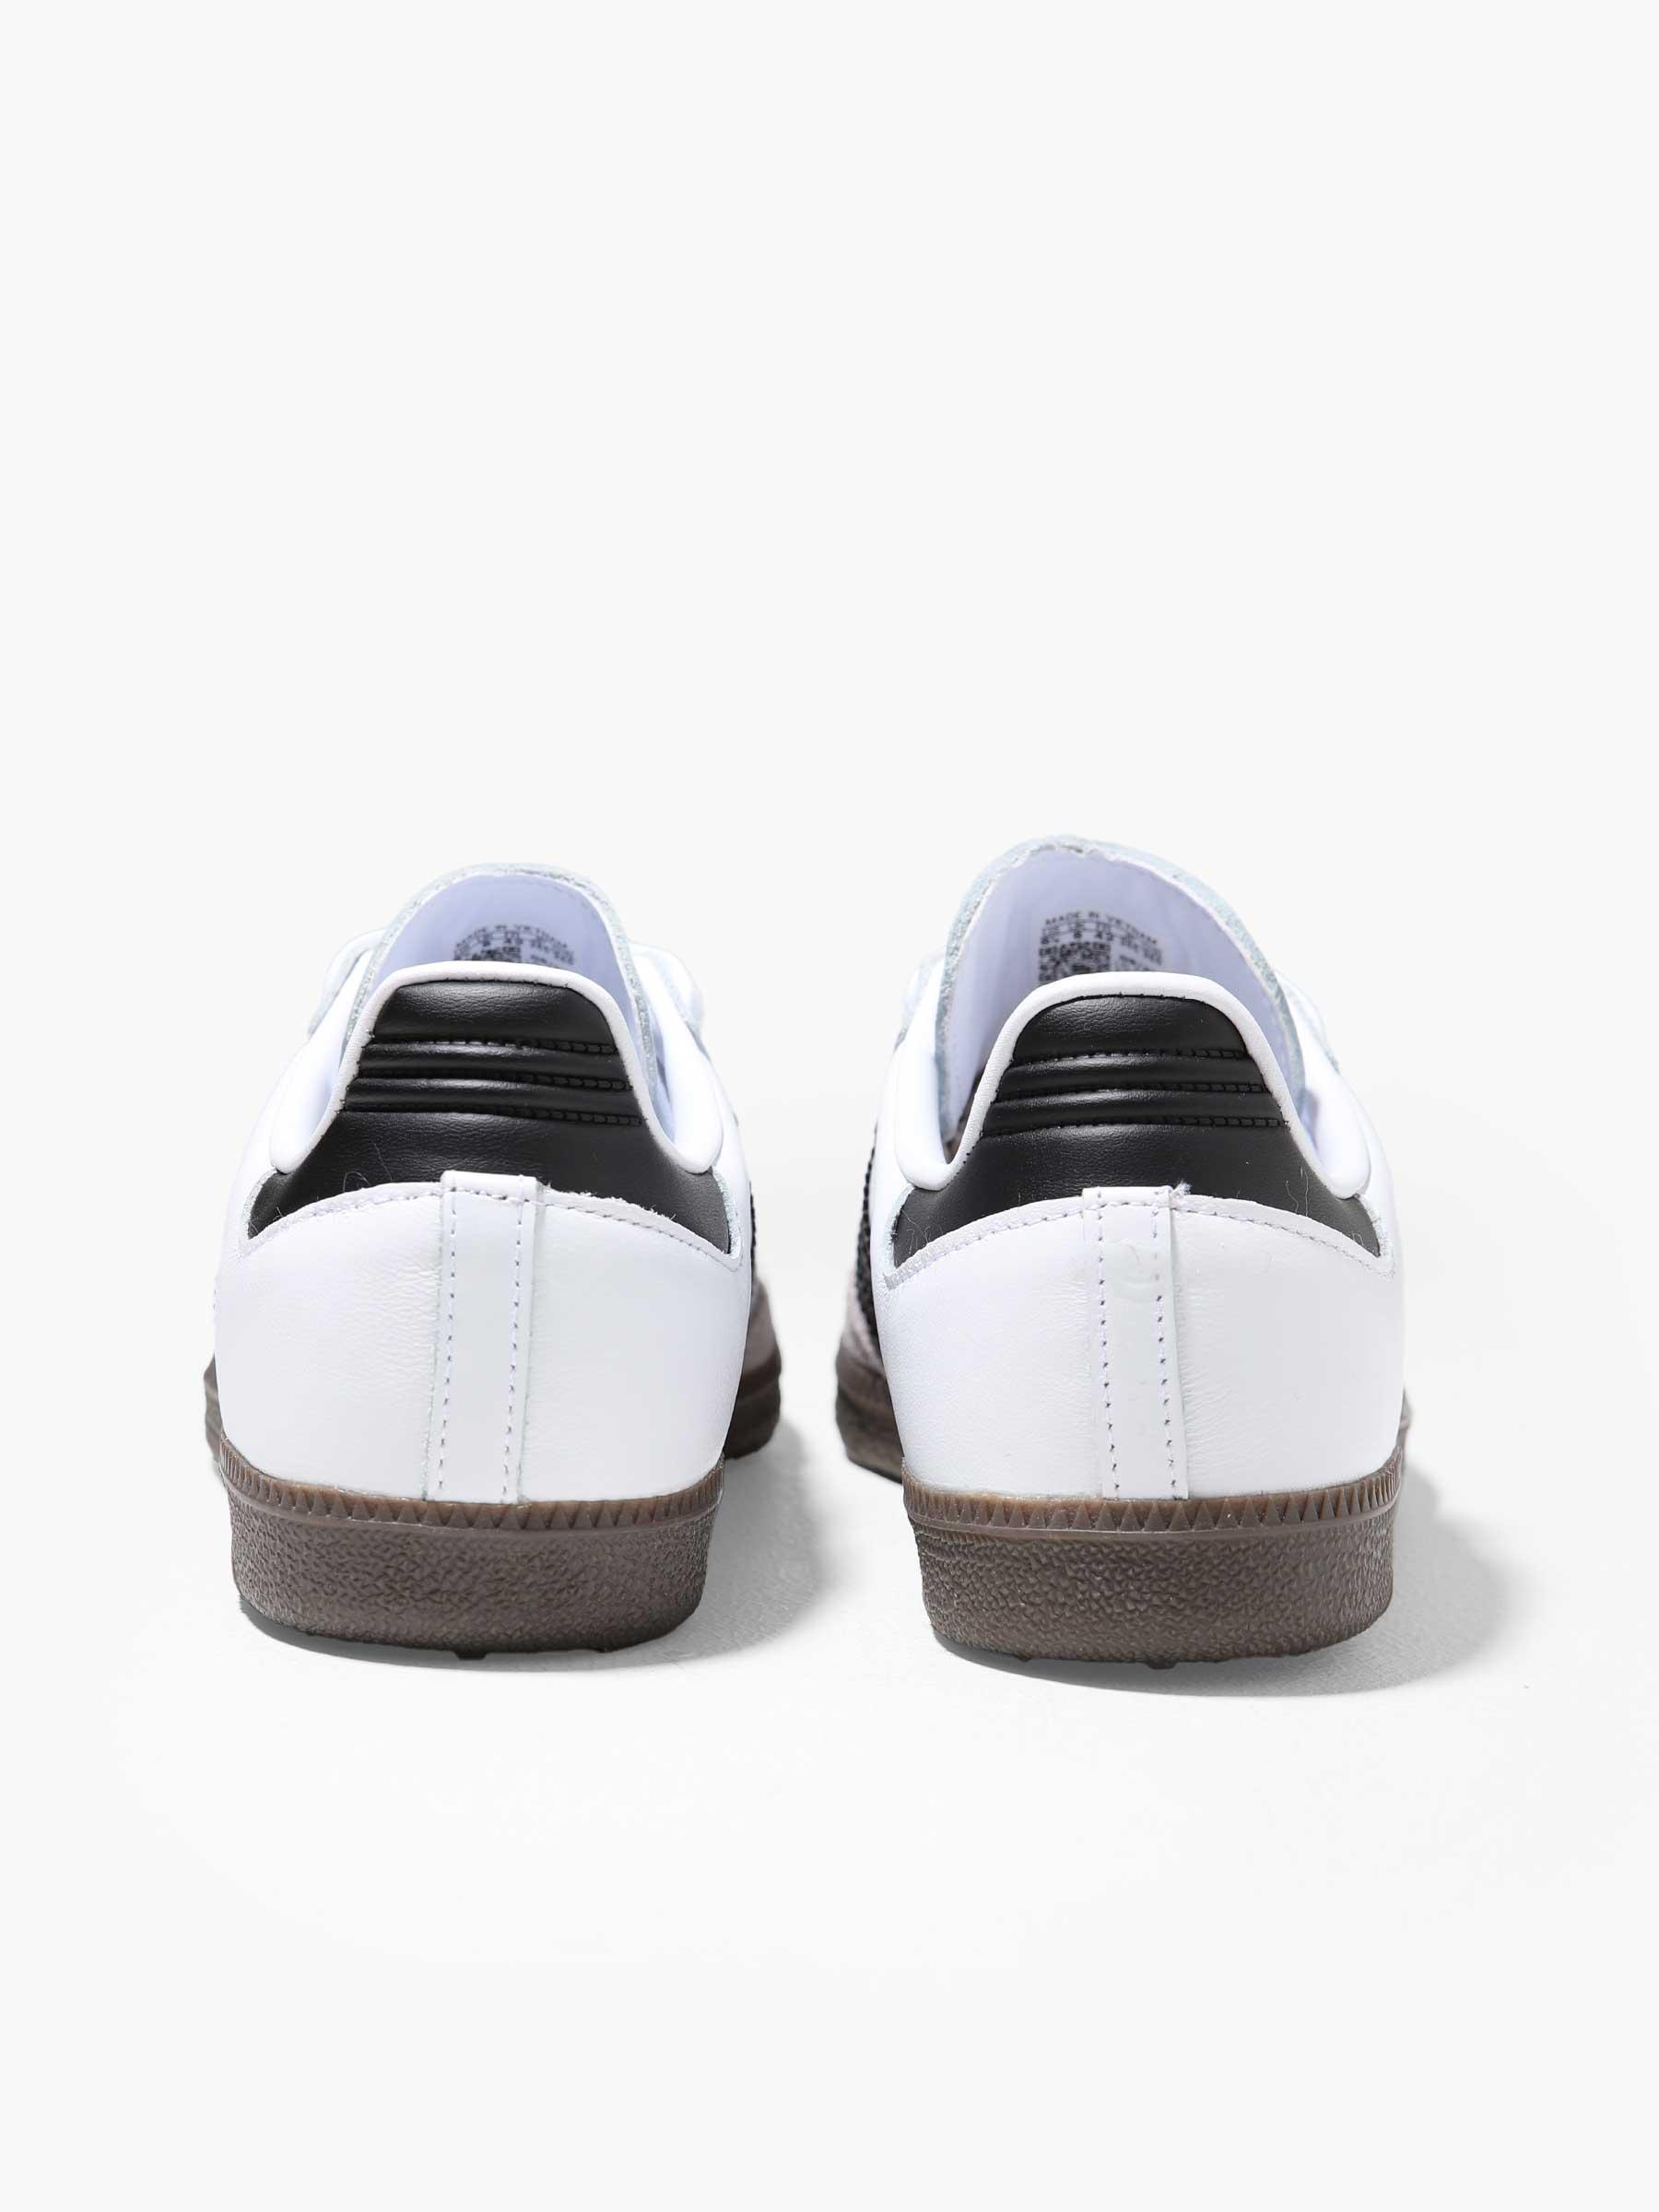 Samba OG Footwear White Core Black Clear Granite B75806